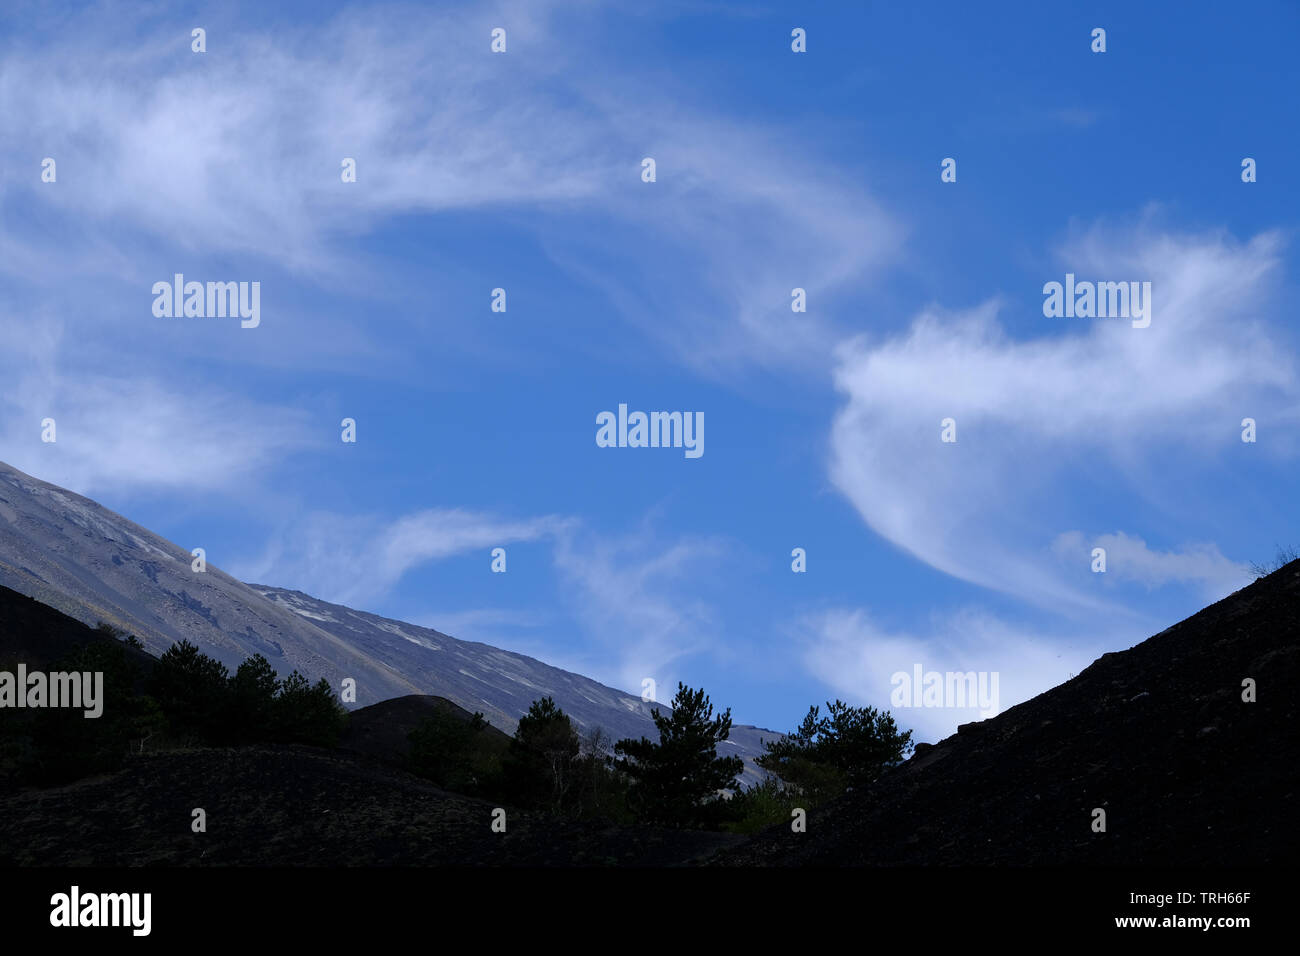 Personen Silhouette auf blauem Himmel Hintergrund auf dem Gipfel des Ätna, Sizilien, Italien Stockfoto